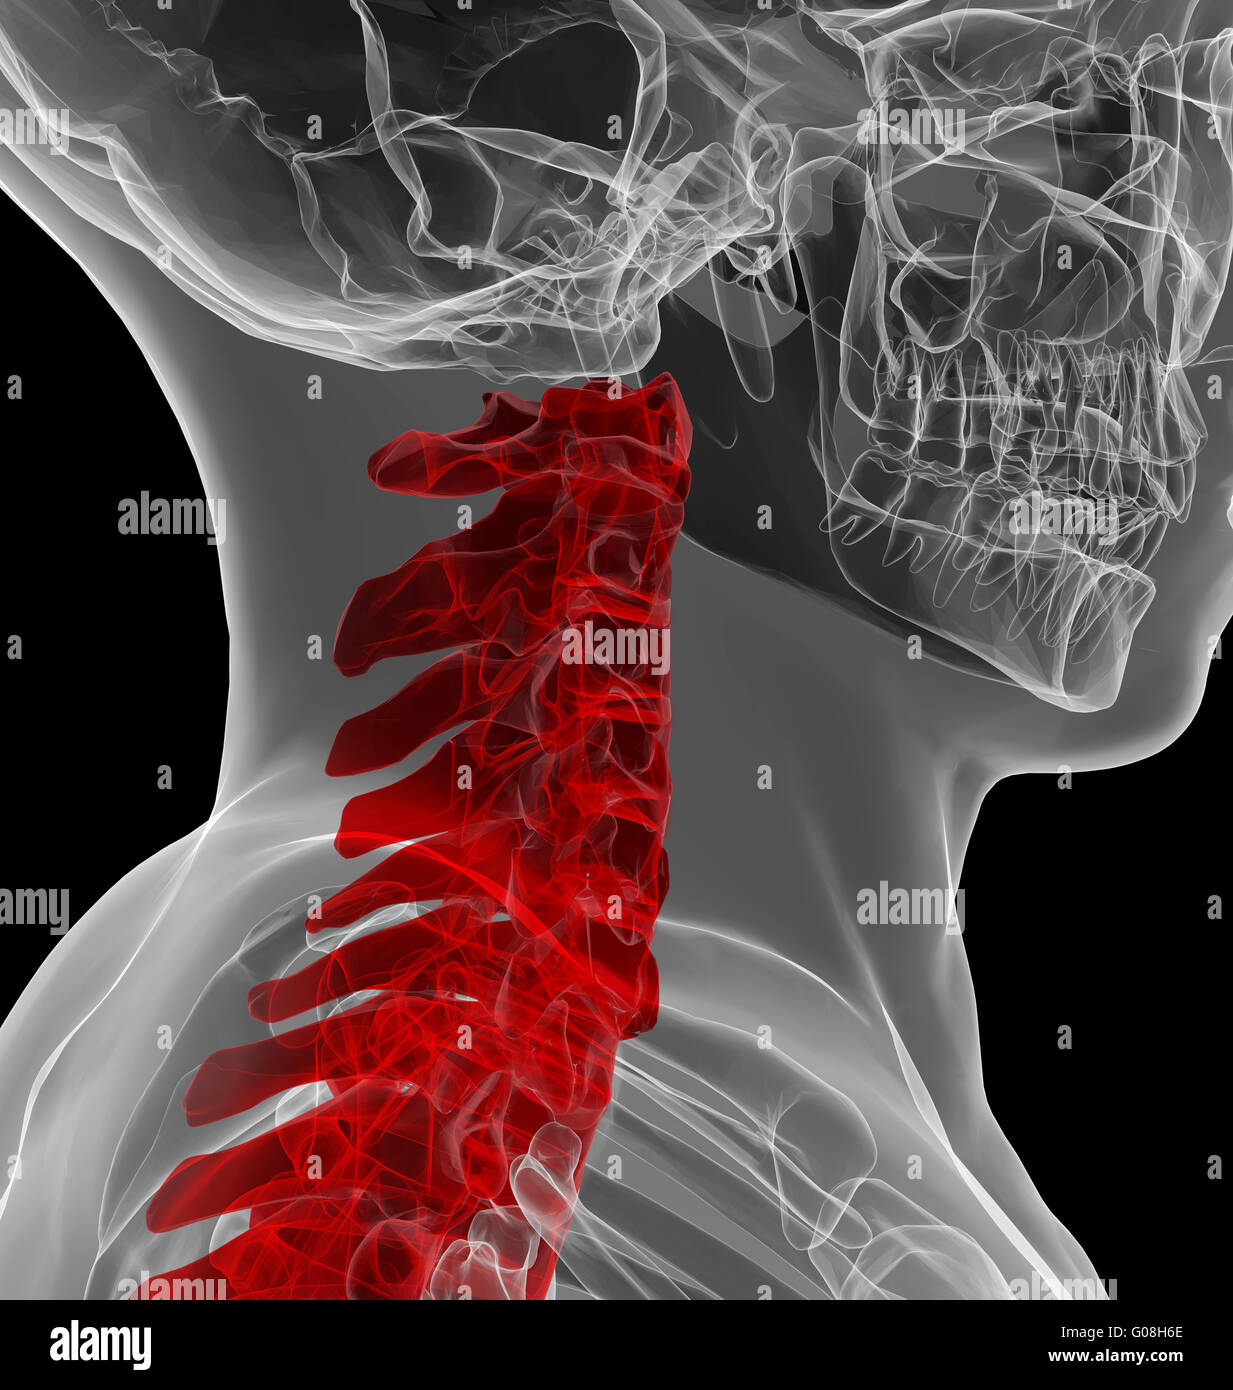 La vue X-ray de la colonne cervicale Banque D'Images